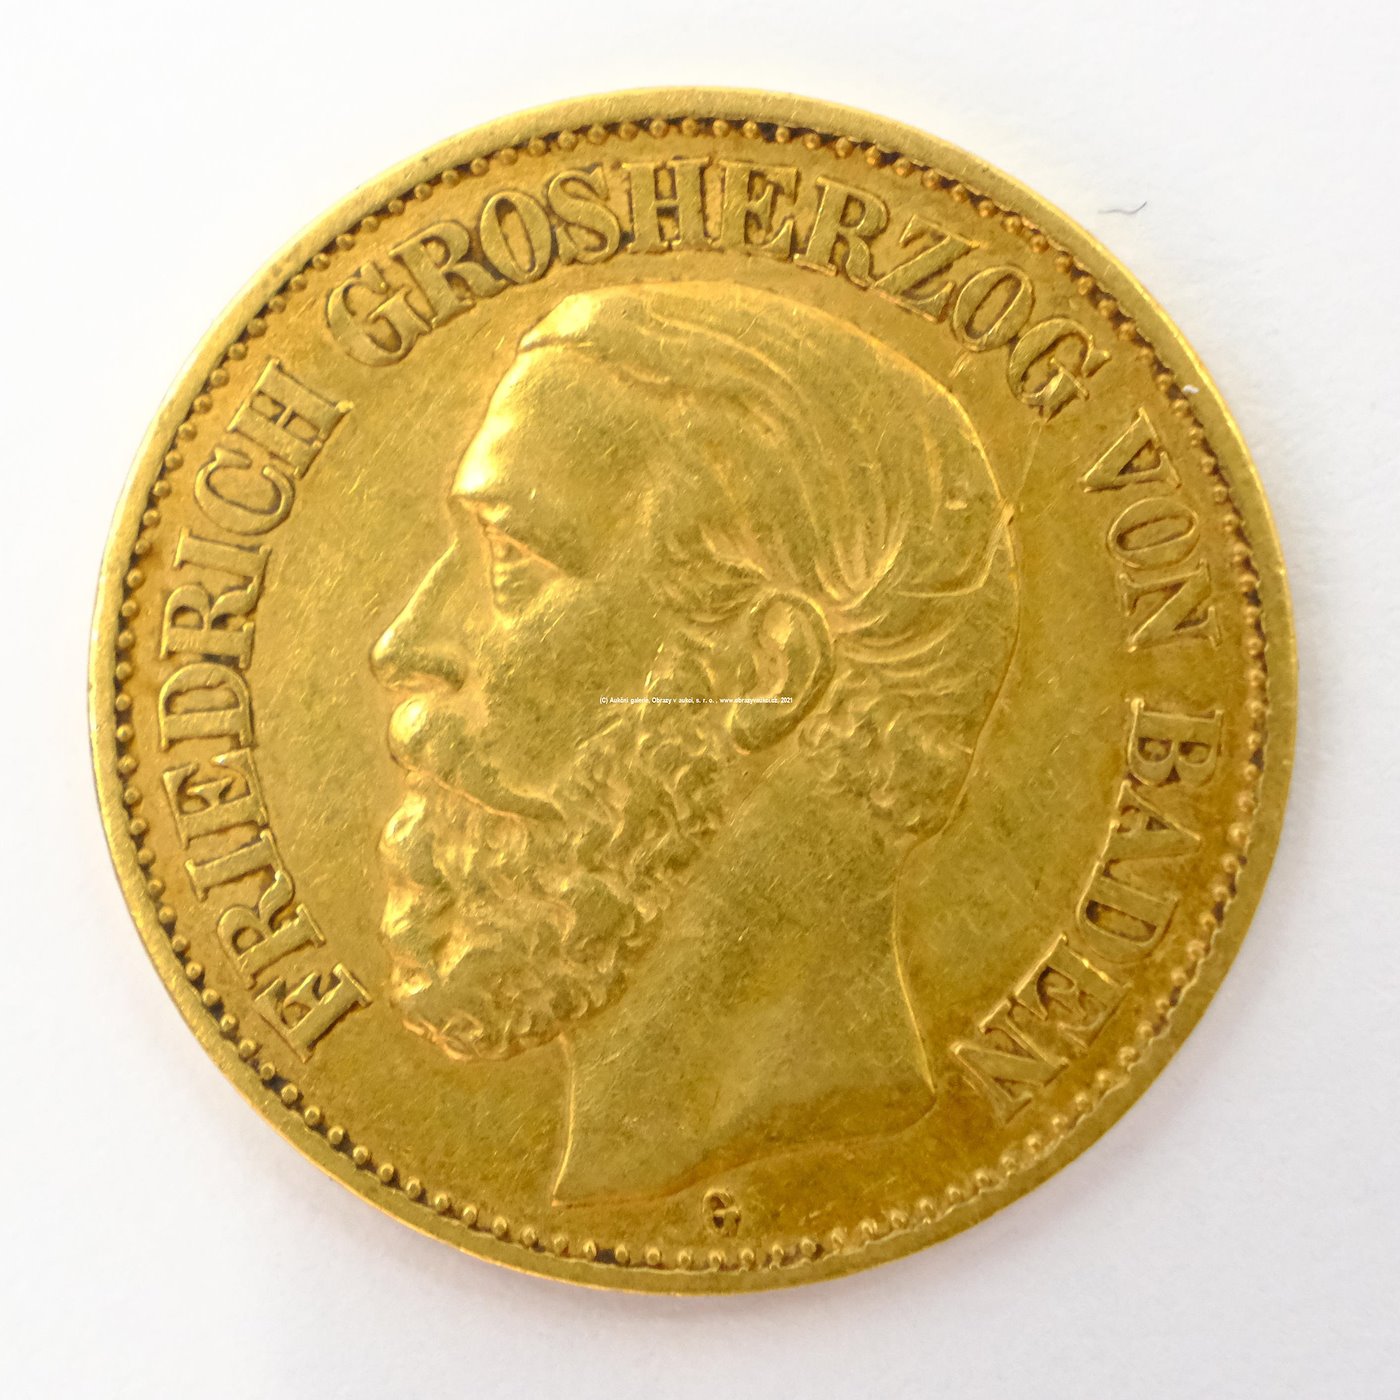 .. - Zlatá mince 10 marek, Německo 1891 G. Zlato 900/1000, průměr 19,5 mm, hrubá hmotnost 3,98 g